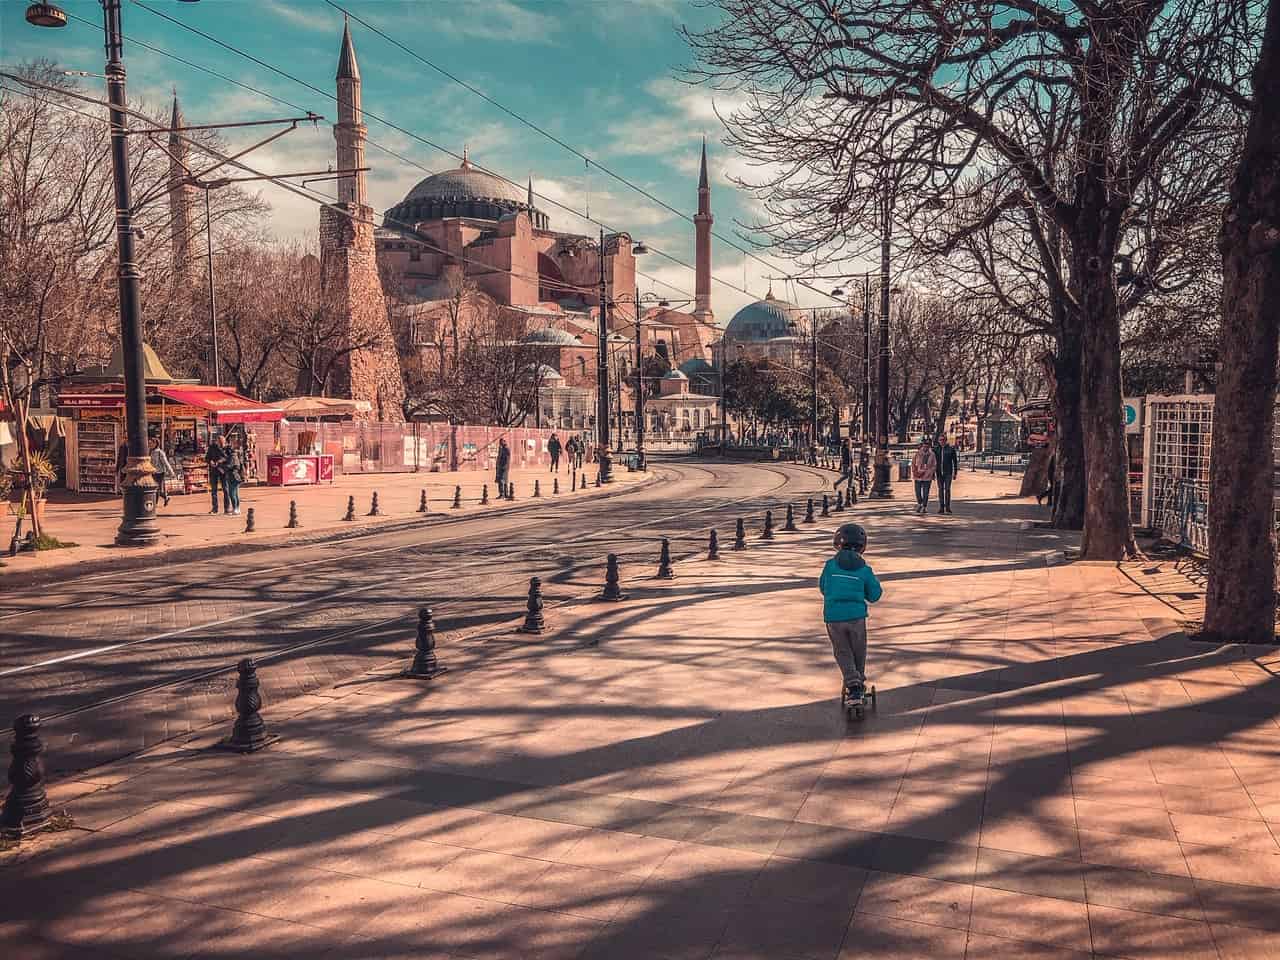 Hagia Sofia - Istanbul